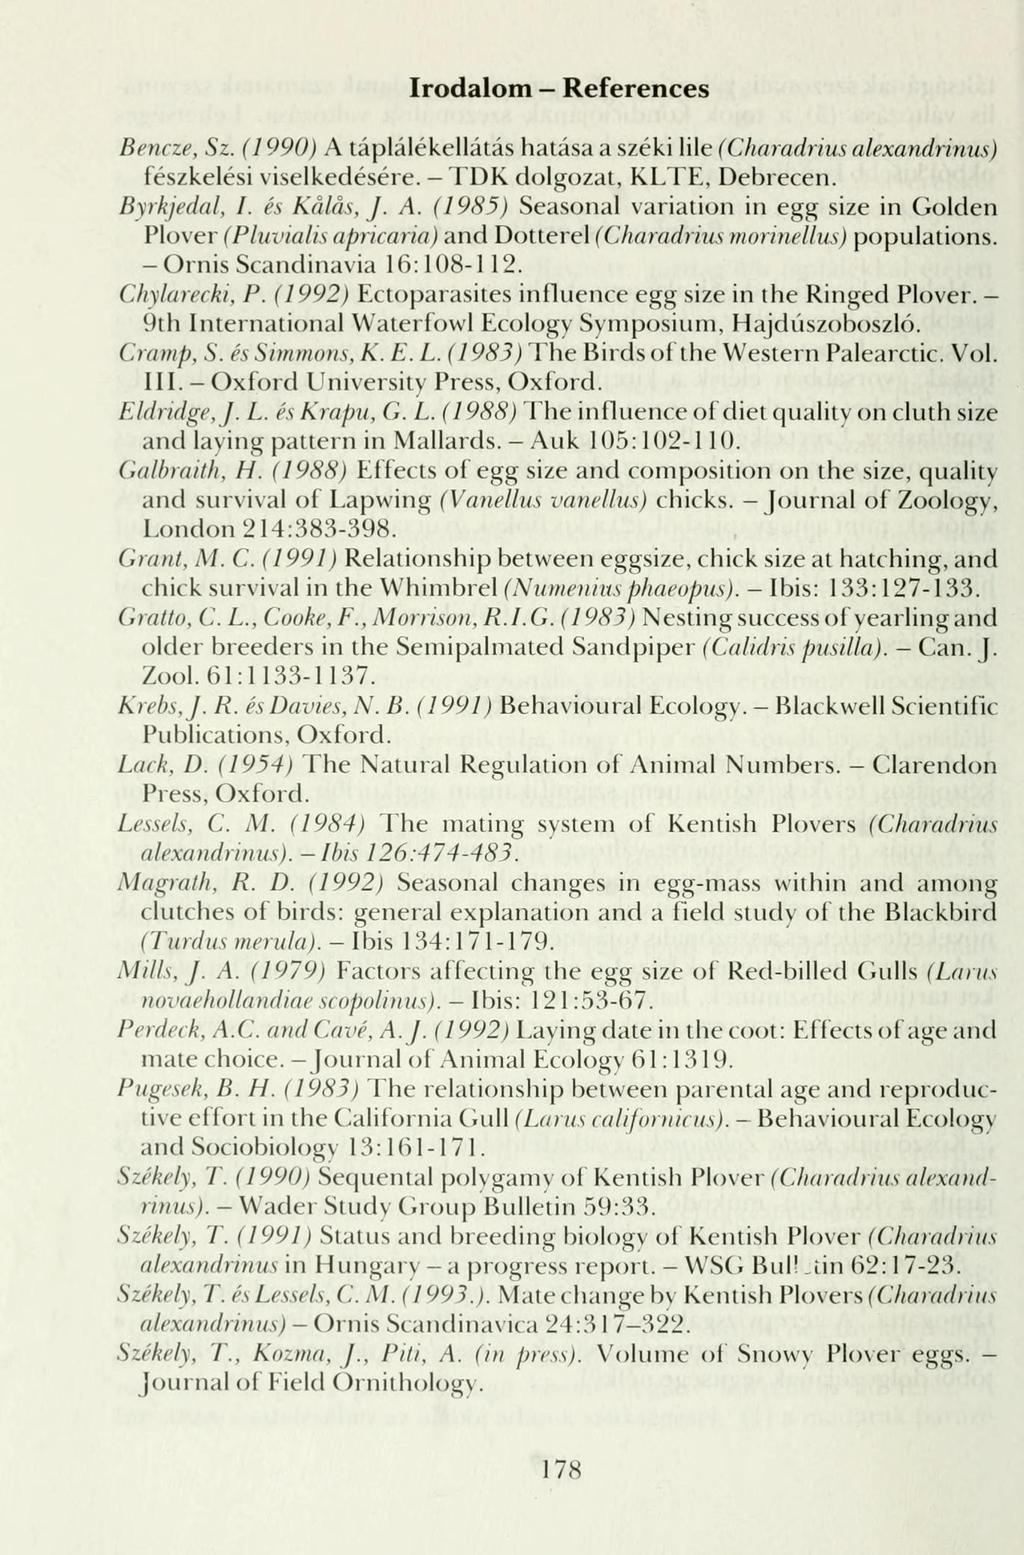 Irodalom - References Bencze, Sz. (1990) A táplálékellátás hatása a széki lile (Charadrius alexandrinu fészkelési viselkedésére. TDK dolgozat, KLTE, Debrecen. Byrkjedal, I. és Keilas, J. A. (1985) Seasonal Variation in egg size in Golden Plover (Pluvialis apricaria) and Dotterer(Charadrius morinellus) populations - Ornis Scandinavia 16:108-112.